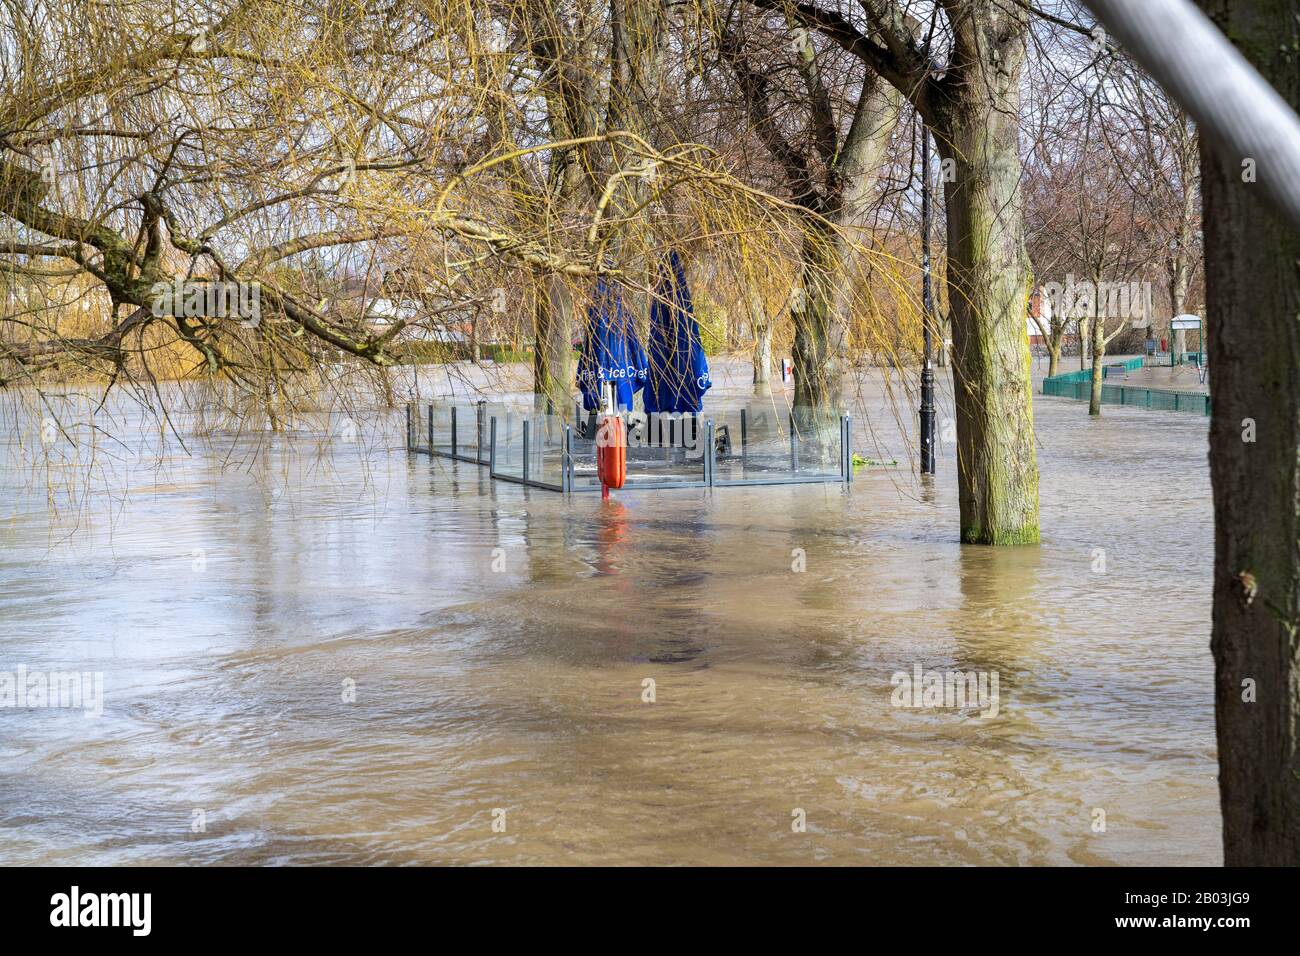 Inondation de la rivière Severn à Shrewsbury, Royaume-Uni. Inondant le parc Quarry , une aire de jeux pour enfants et le pub Boathouse Banque D'Images